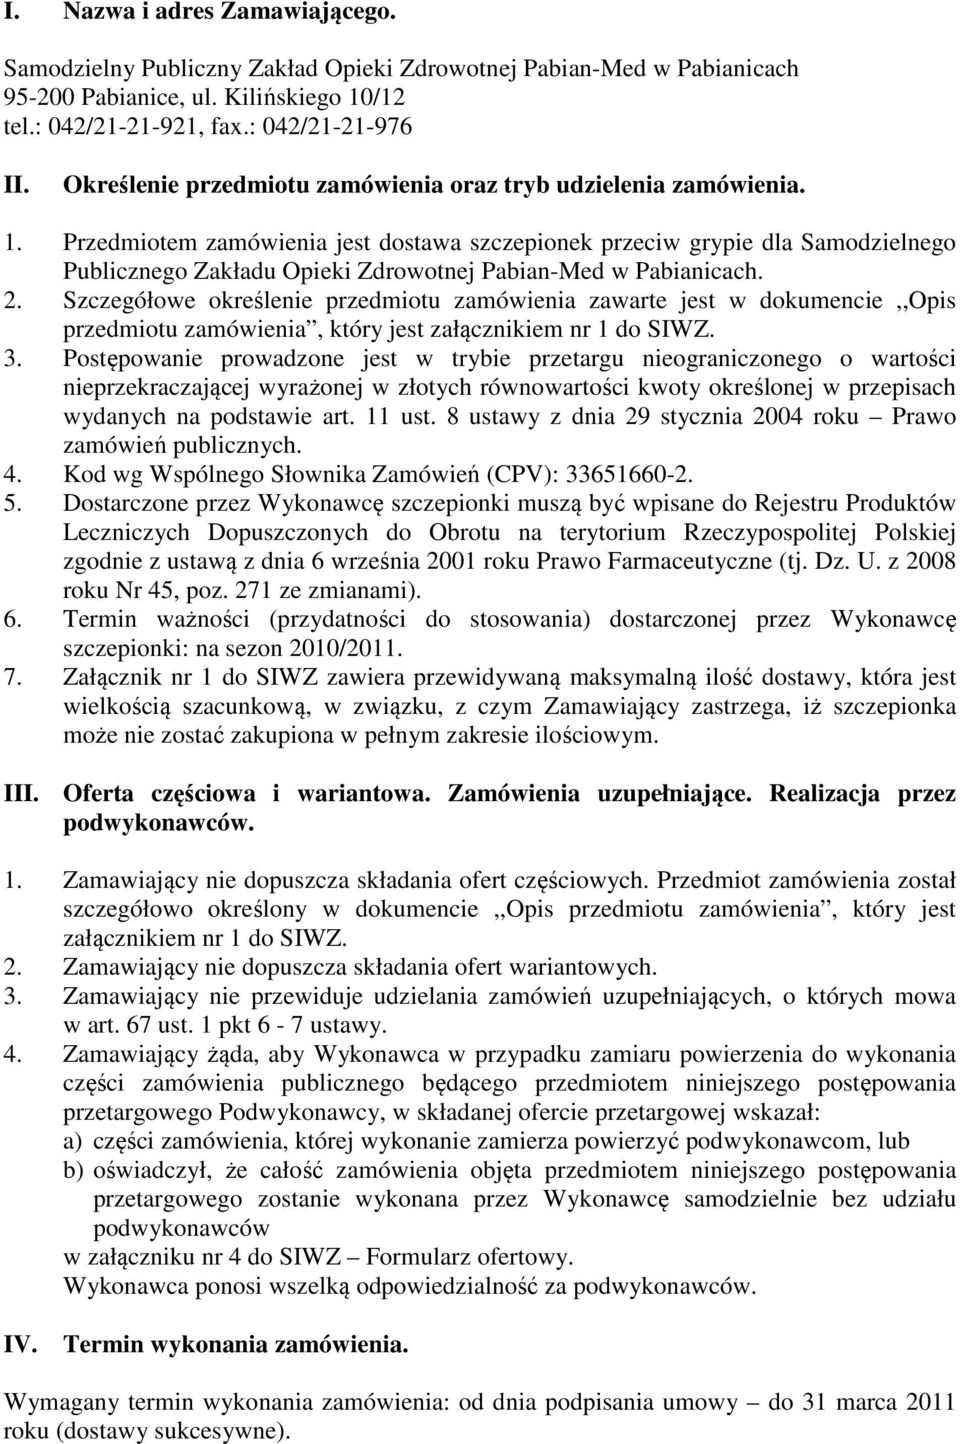 Przedmiotem zamówienia jest dostawa szczepionek przeciw grypie dla Samodzielnego Publicznego Zakładu Opieki Zdrowotnej Pabian-Med w Pabianicach. 2.